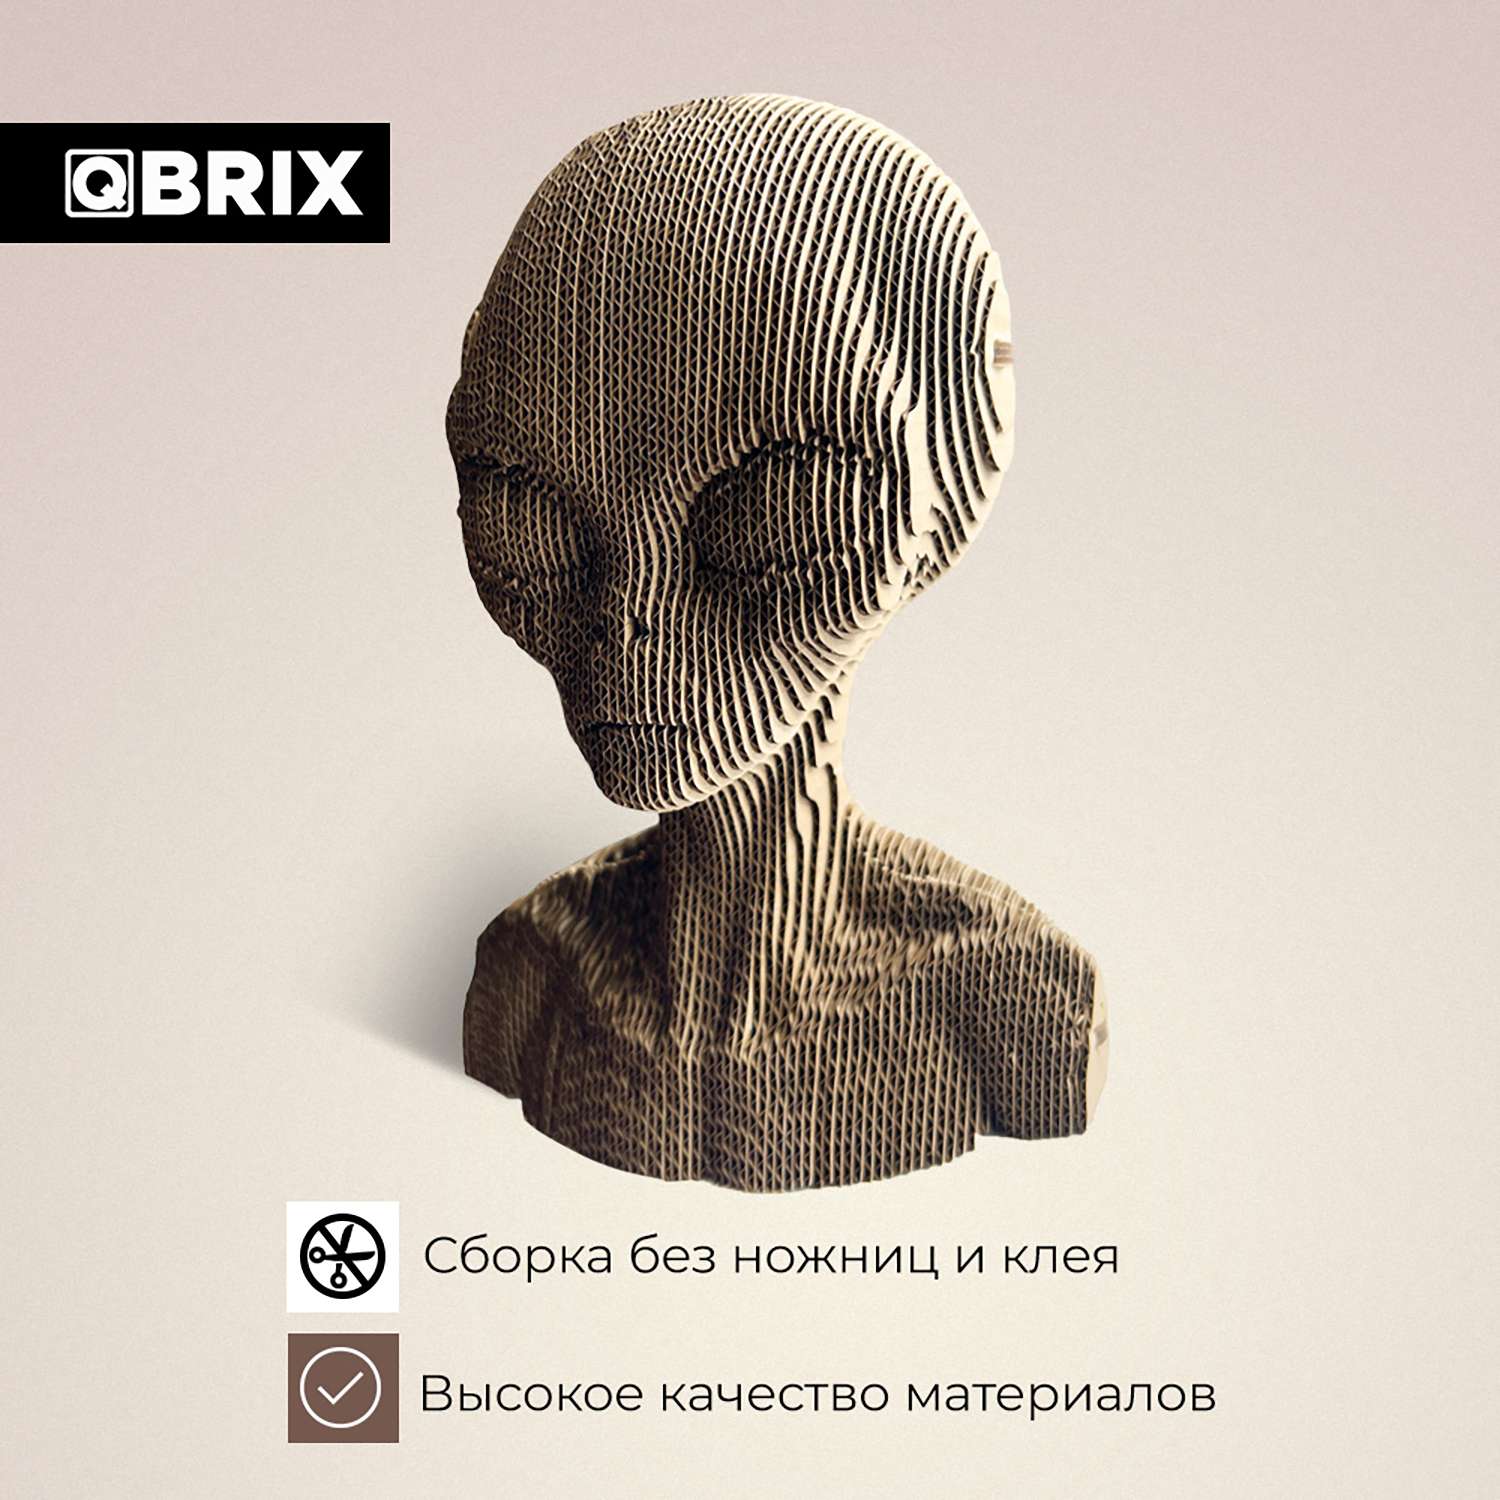 Конструктор QBRIX 3D картонный Инопланетянин 20024 20024 - фото 4